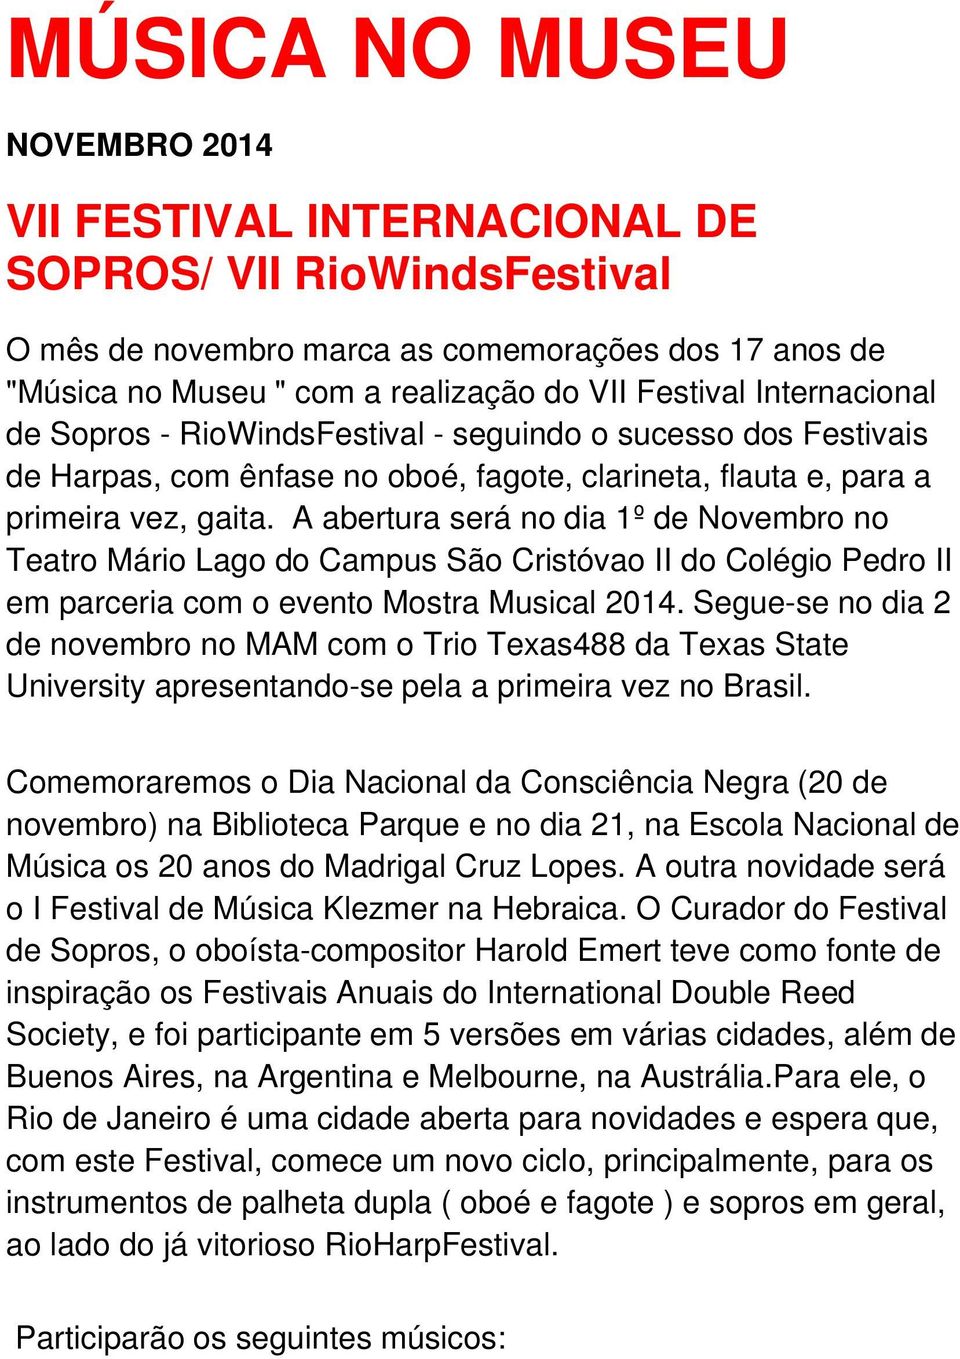 A abertura será no dia 1º de Novembro no Teatro Mário Lago do Campus São Cristóvao II do Colégio Pedro II em parceria com o evento Mostra Musical 2014.